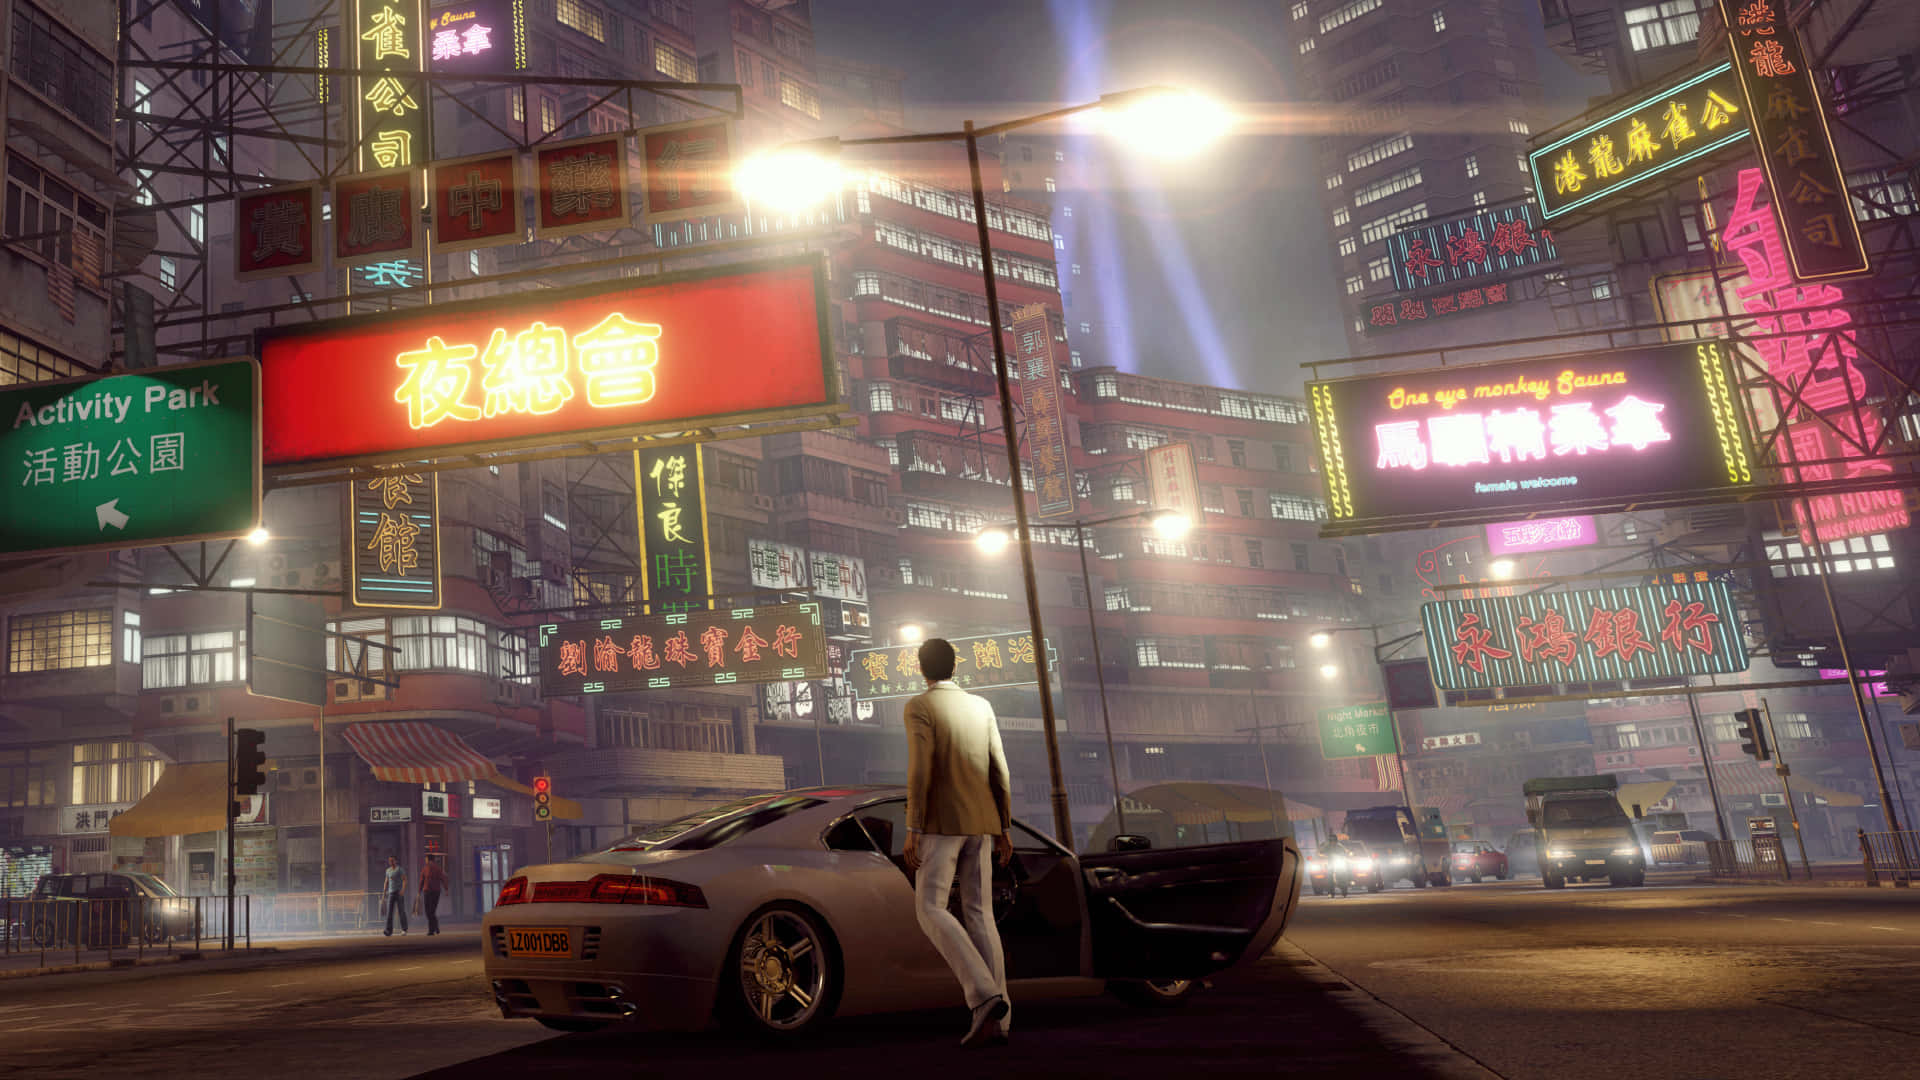 Verwandelnsie Die Straßen Von Hongkong In Ihren Persönlichen Spielplatz In Sleeping Dogs 2. Wallpaper